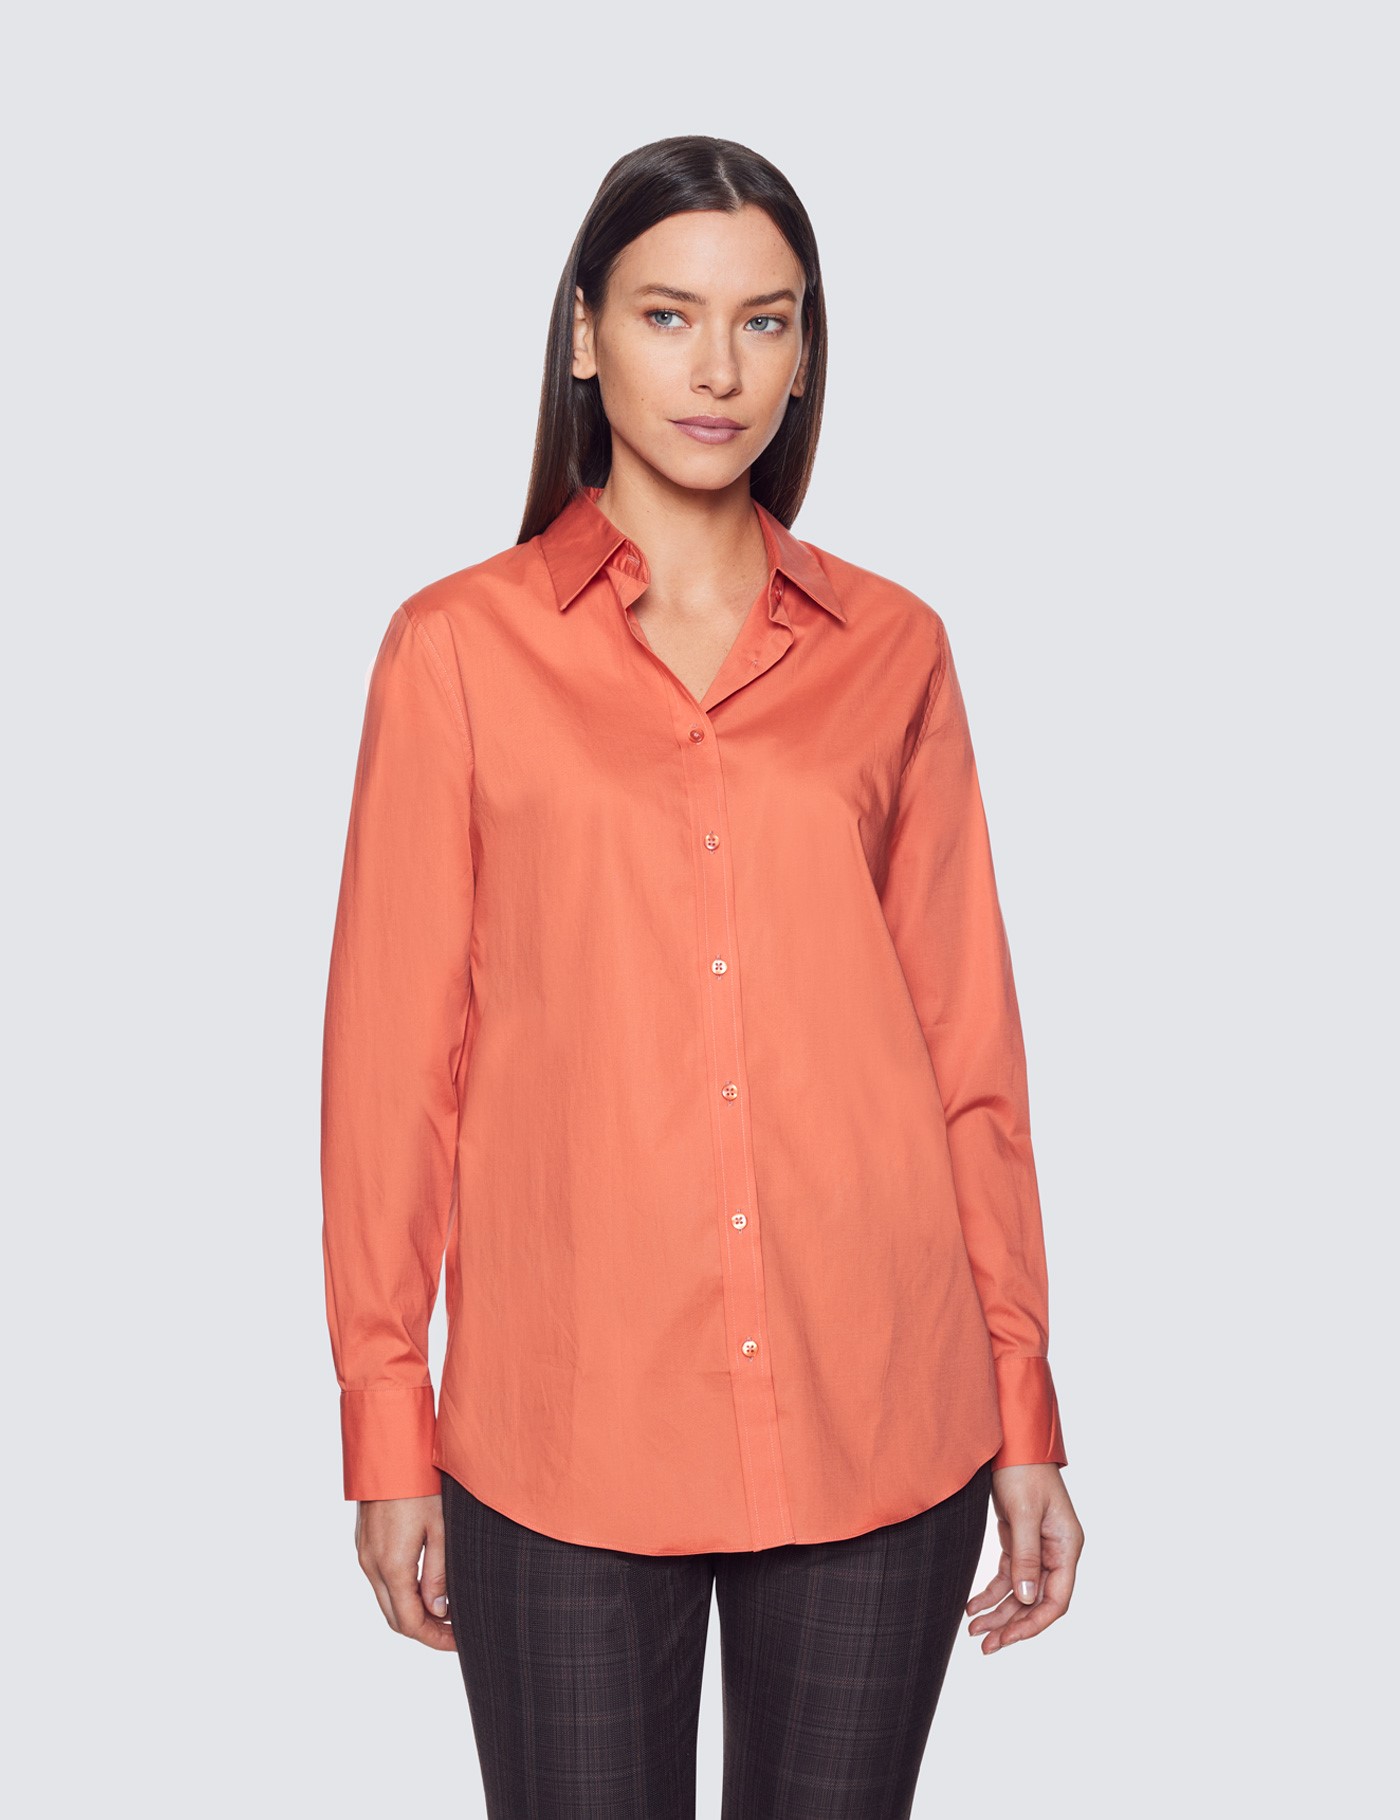 Stylish Kuhl Womens Burnt Orange Henley Shirt - Size Large